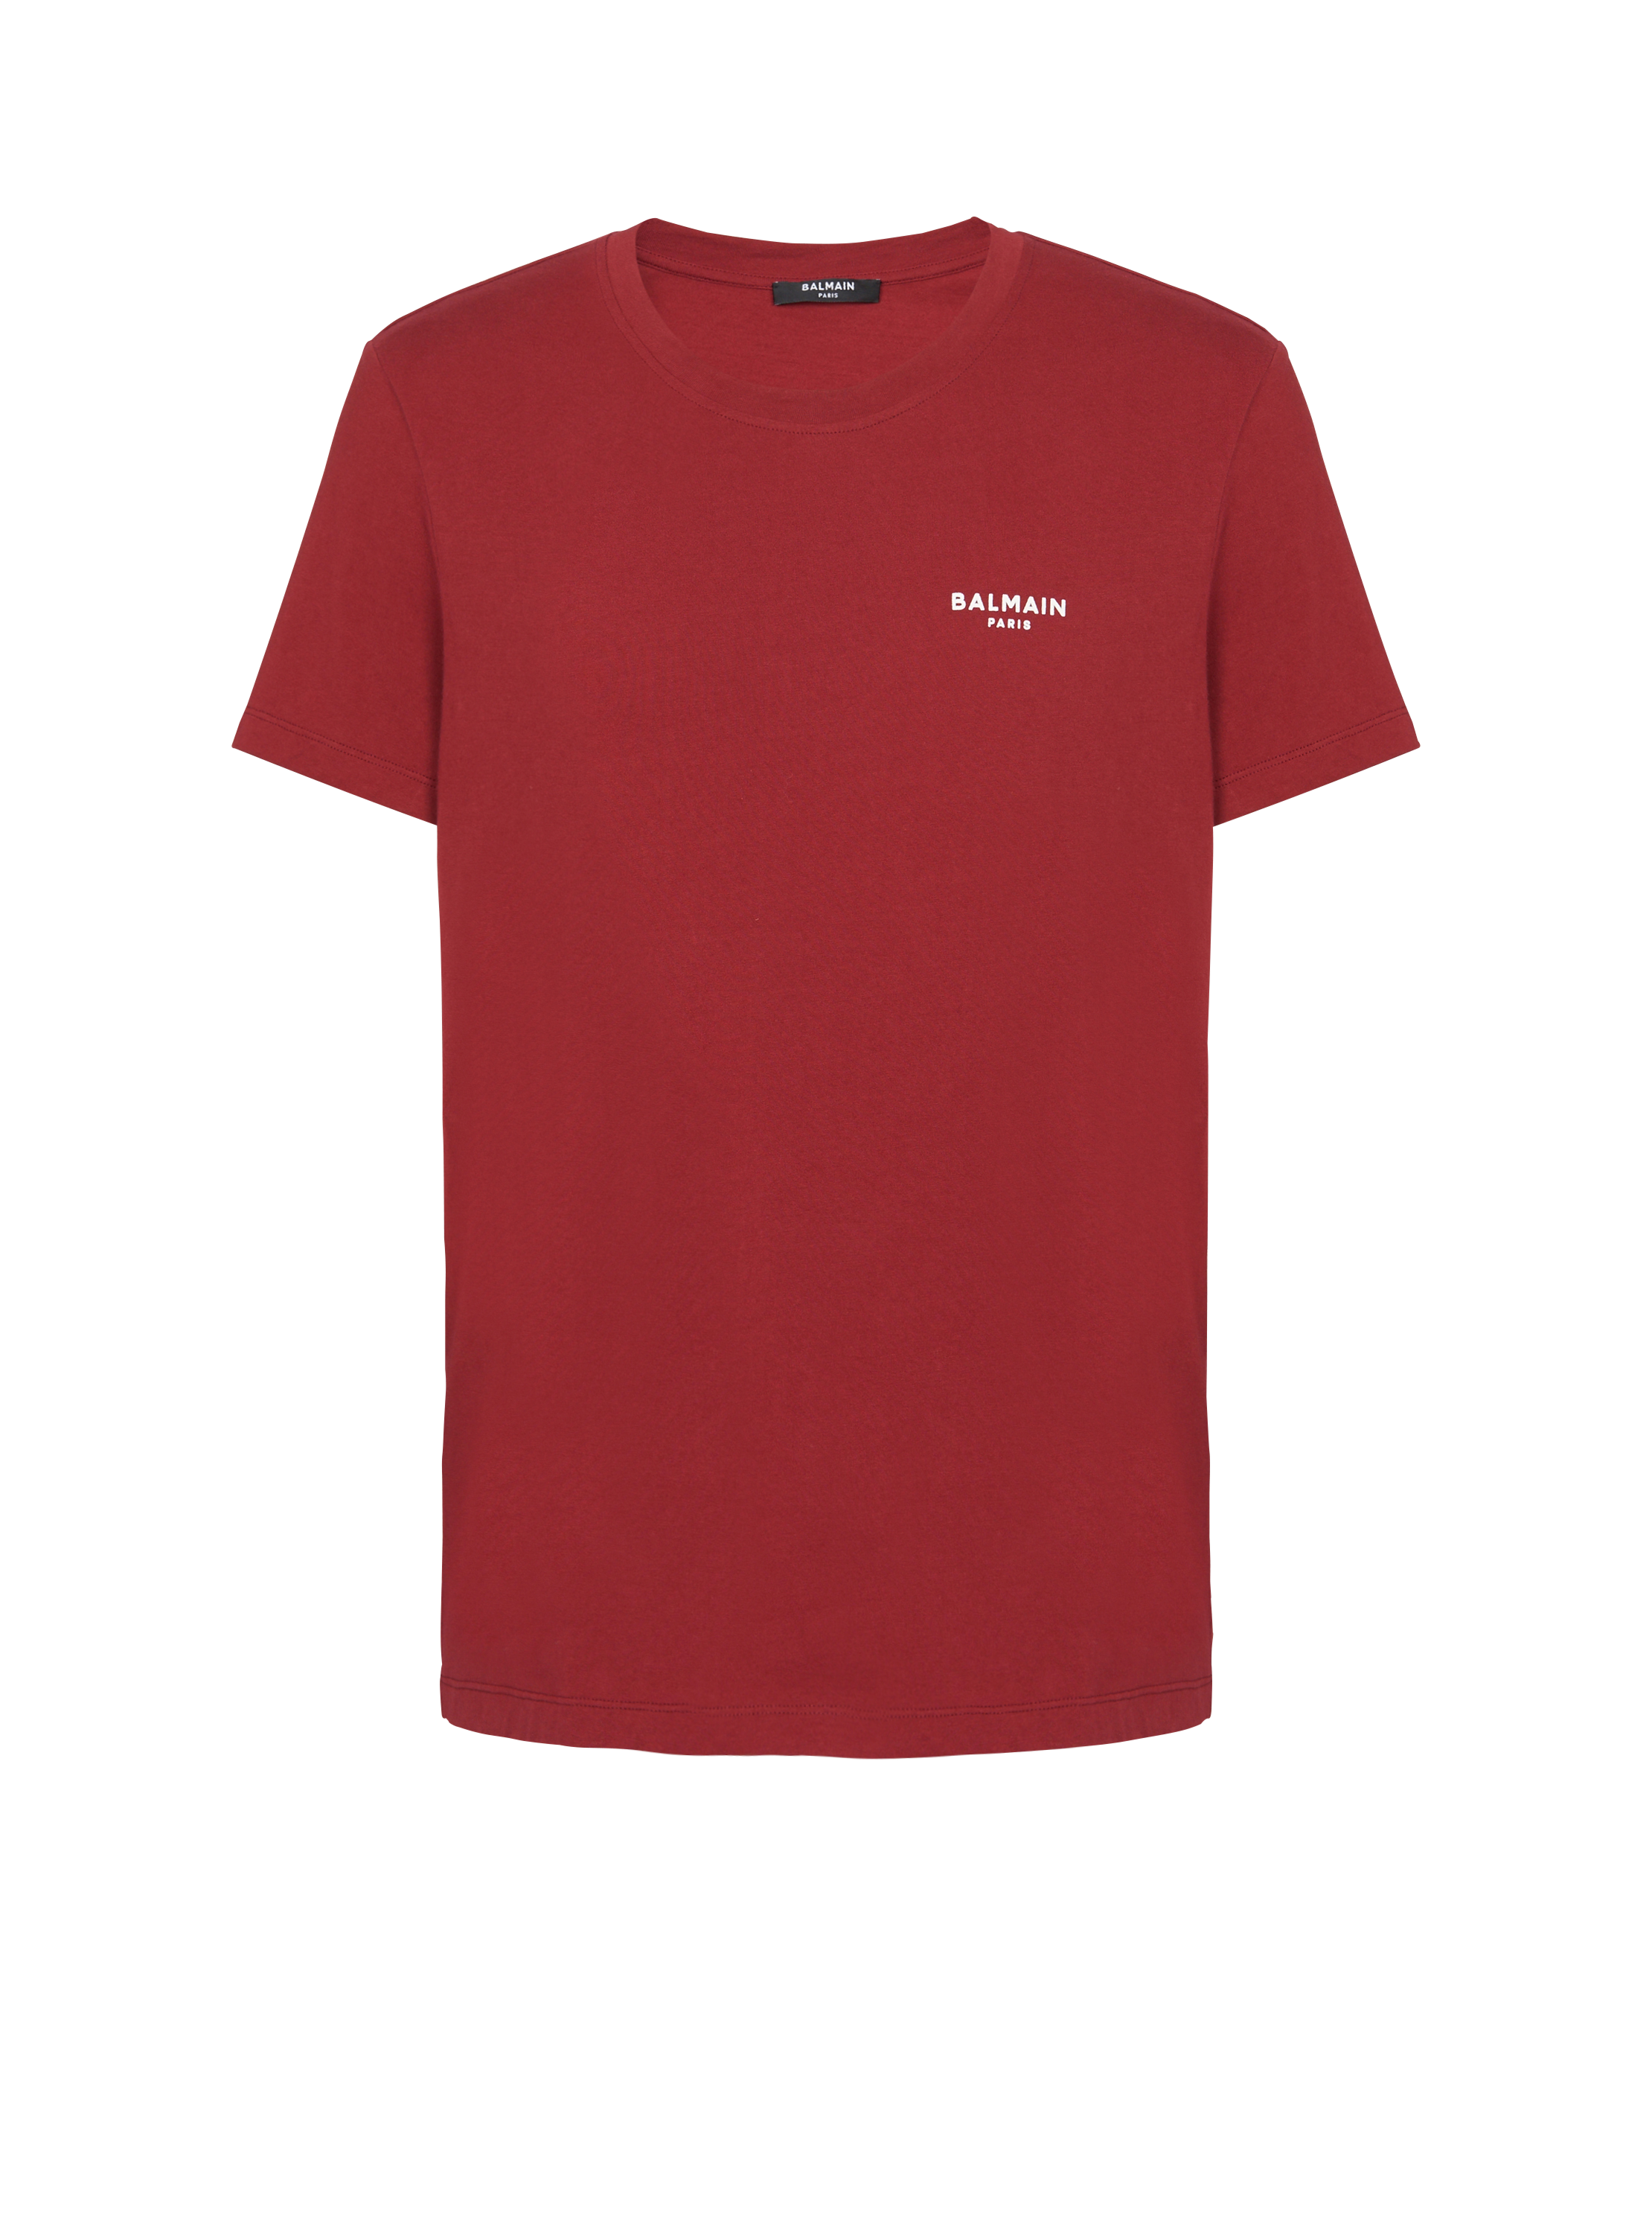 T-Shirt Balmain floccato, rosso, hi-res